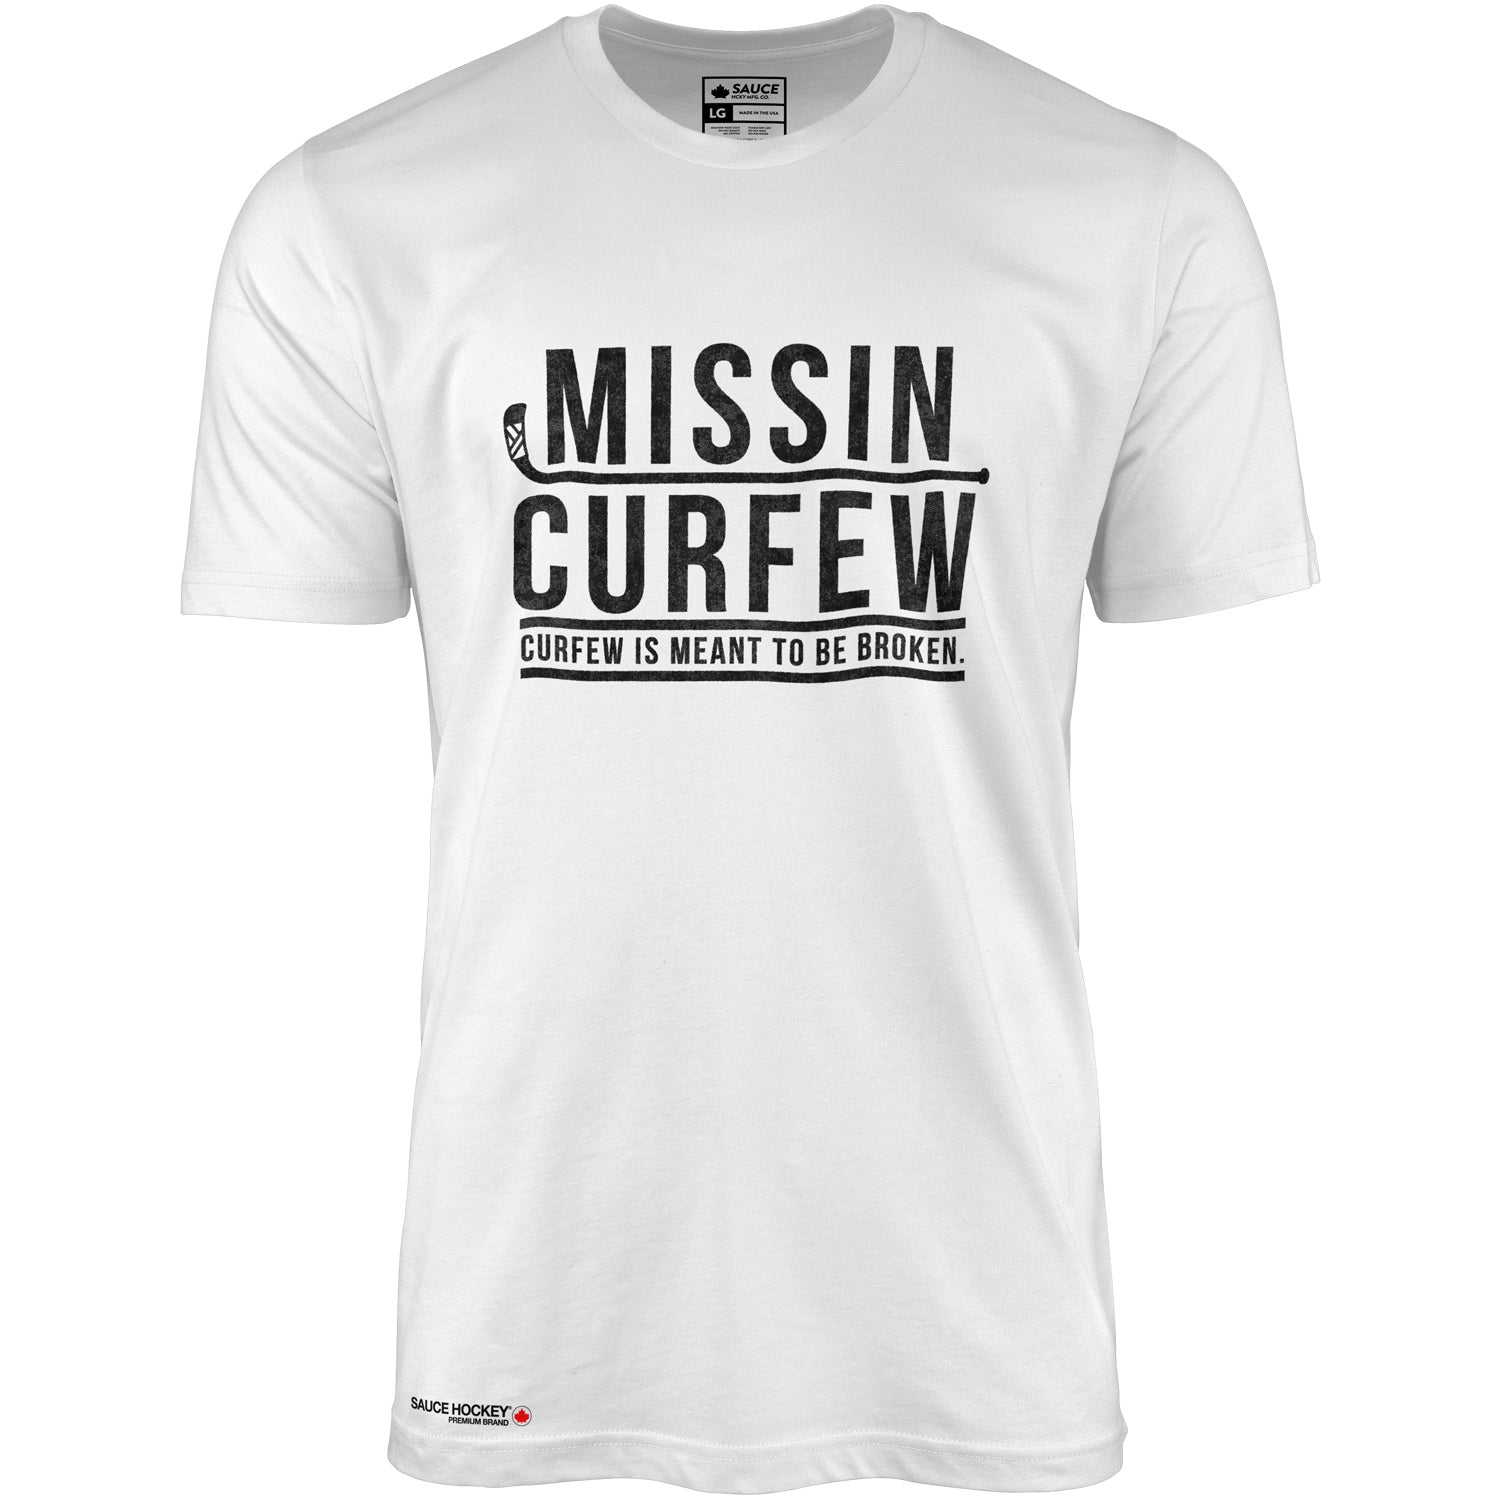 MISSIN CURFEW - WHITE